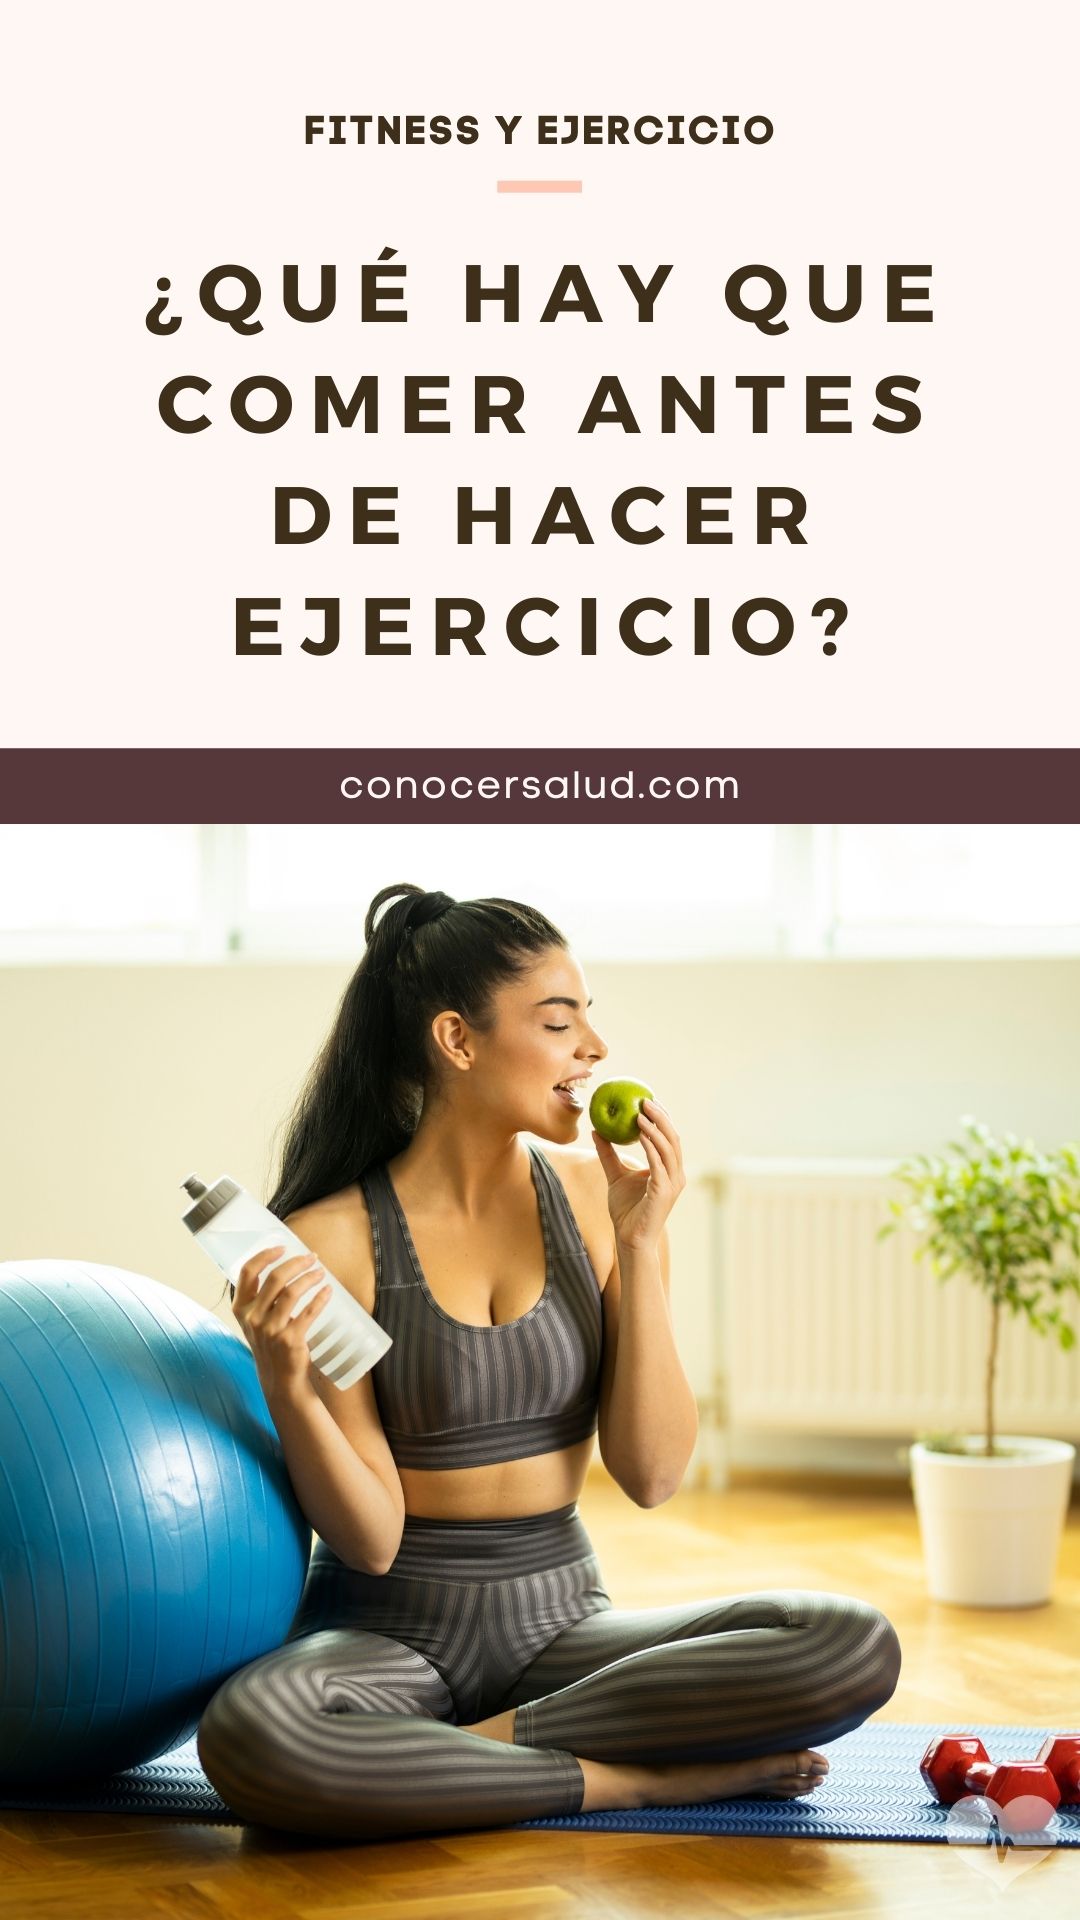 ¿Qué hay que comer antes de hacer ejercicio?